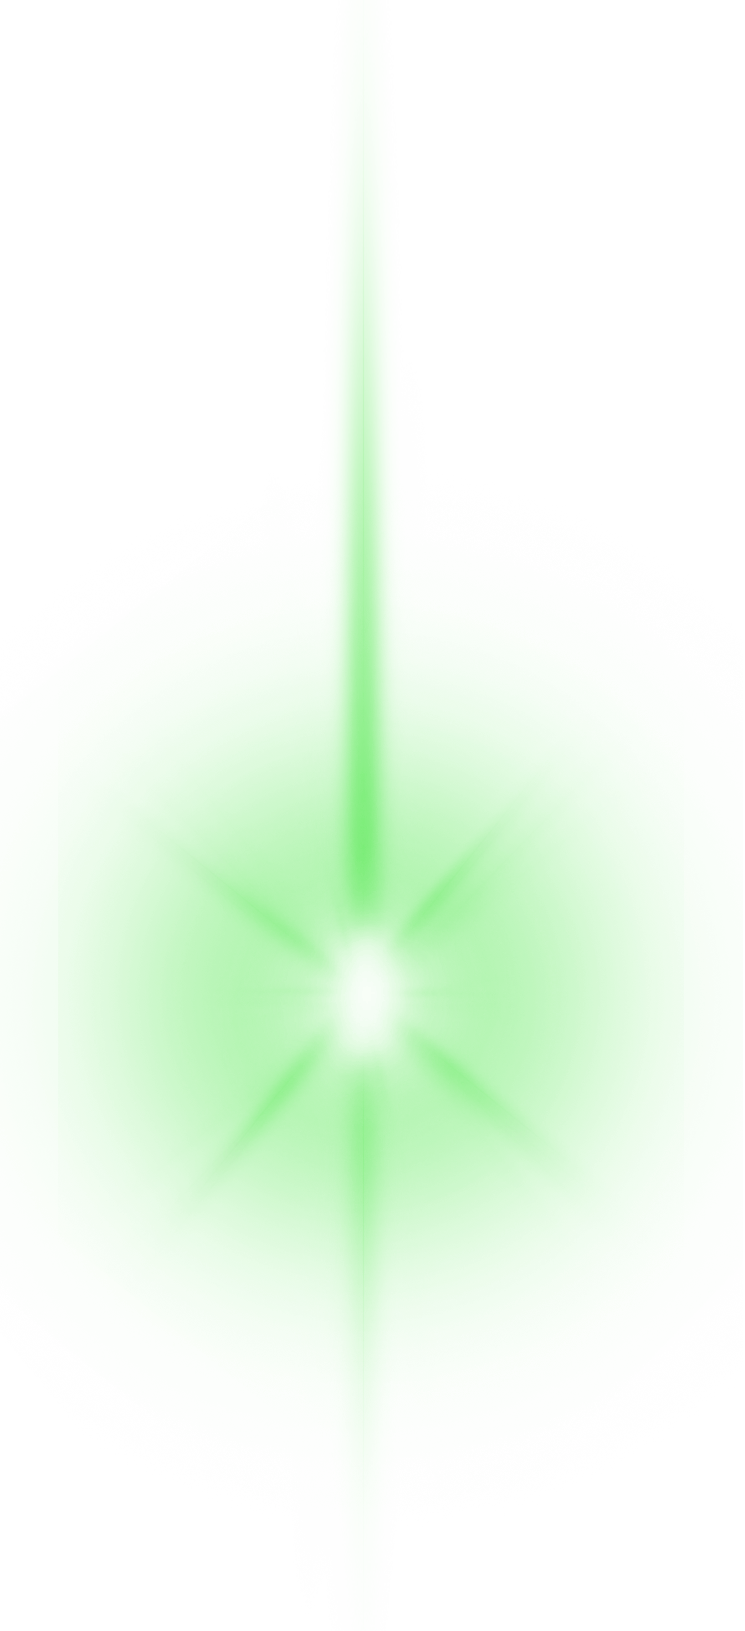 Immagine Trasparente del raggio laser verde